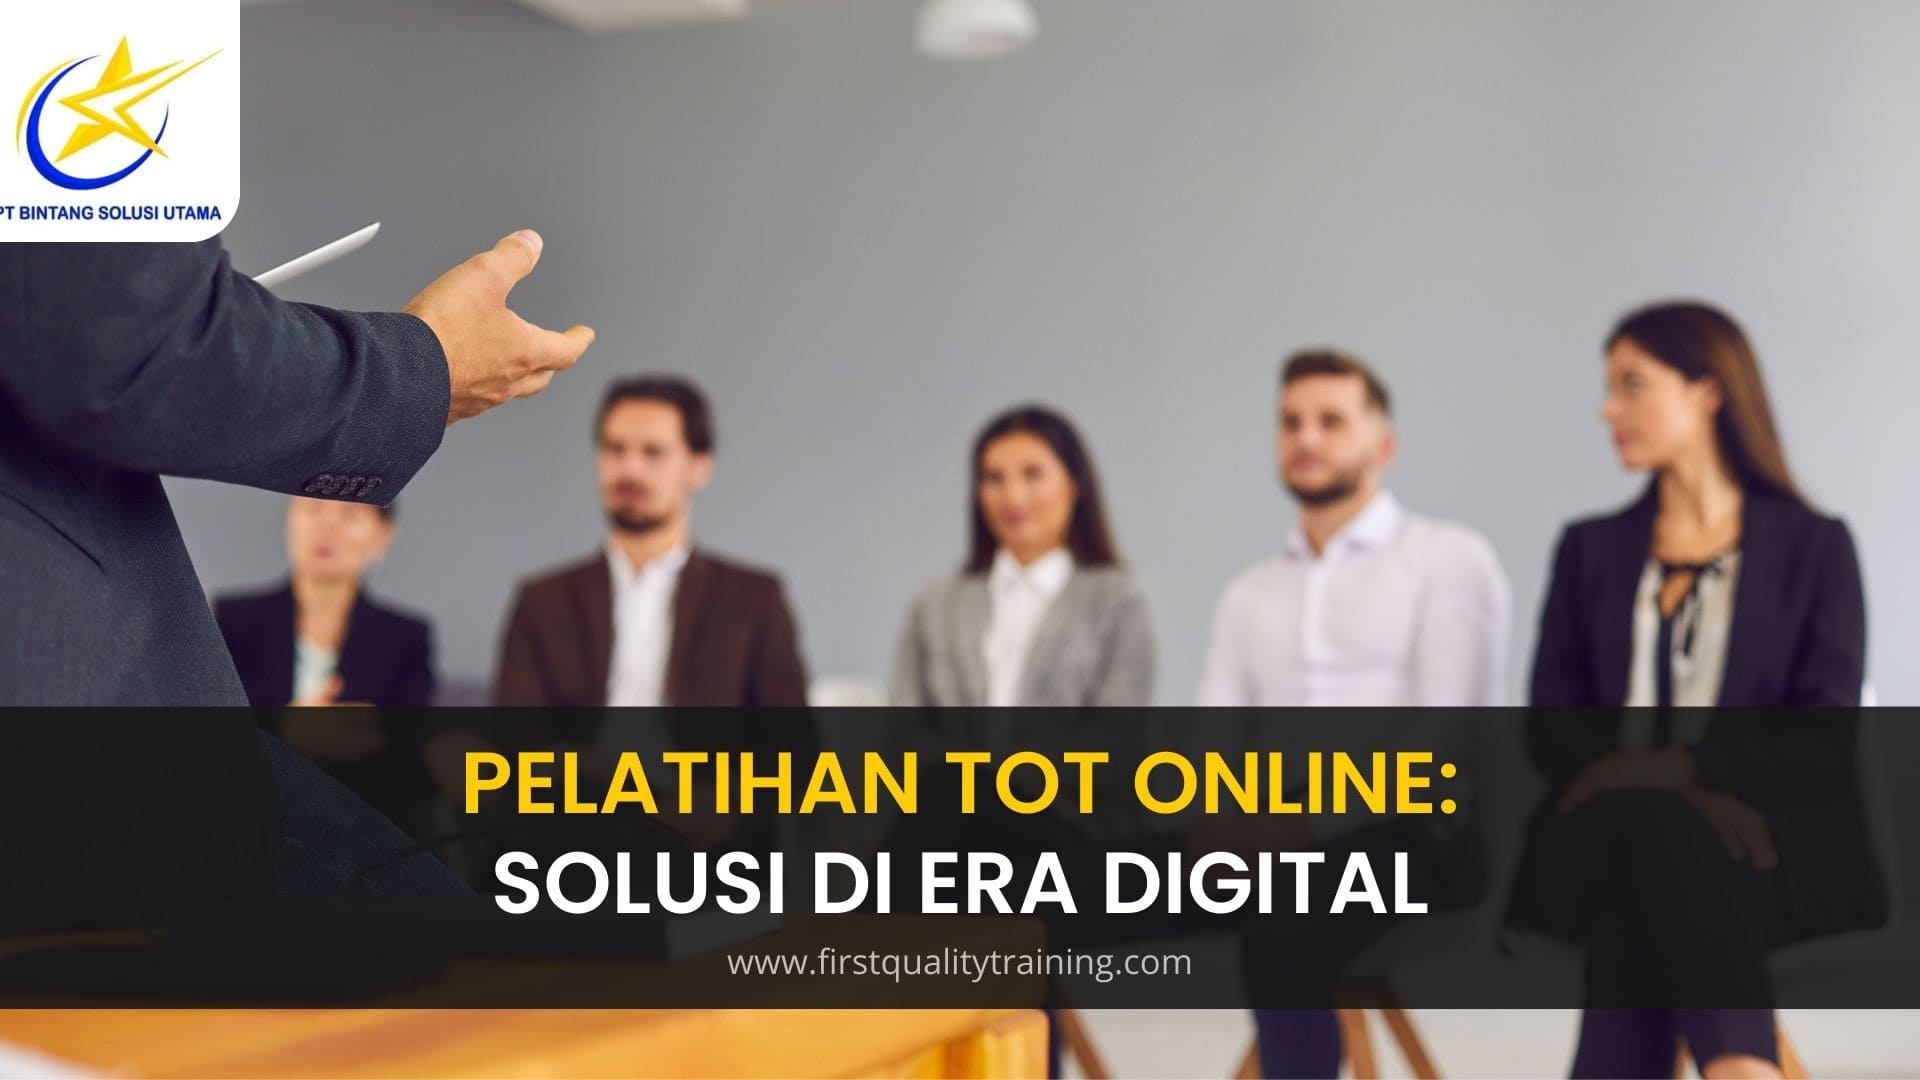 Pelatihan Tot Online: Solusi di Era Digital